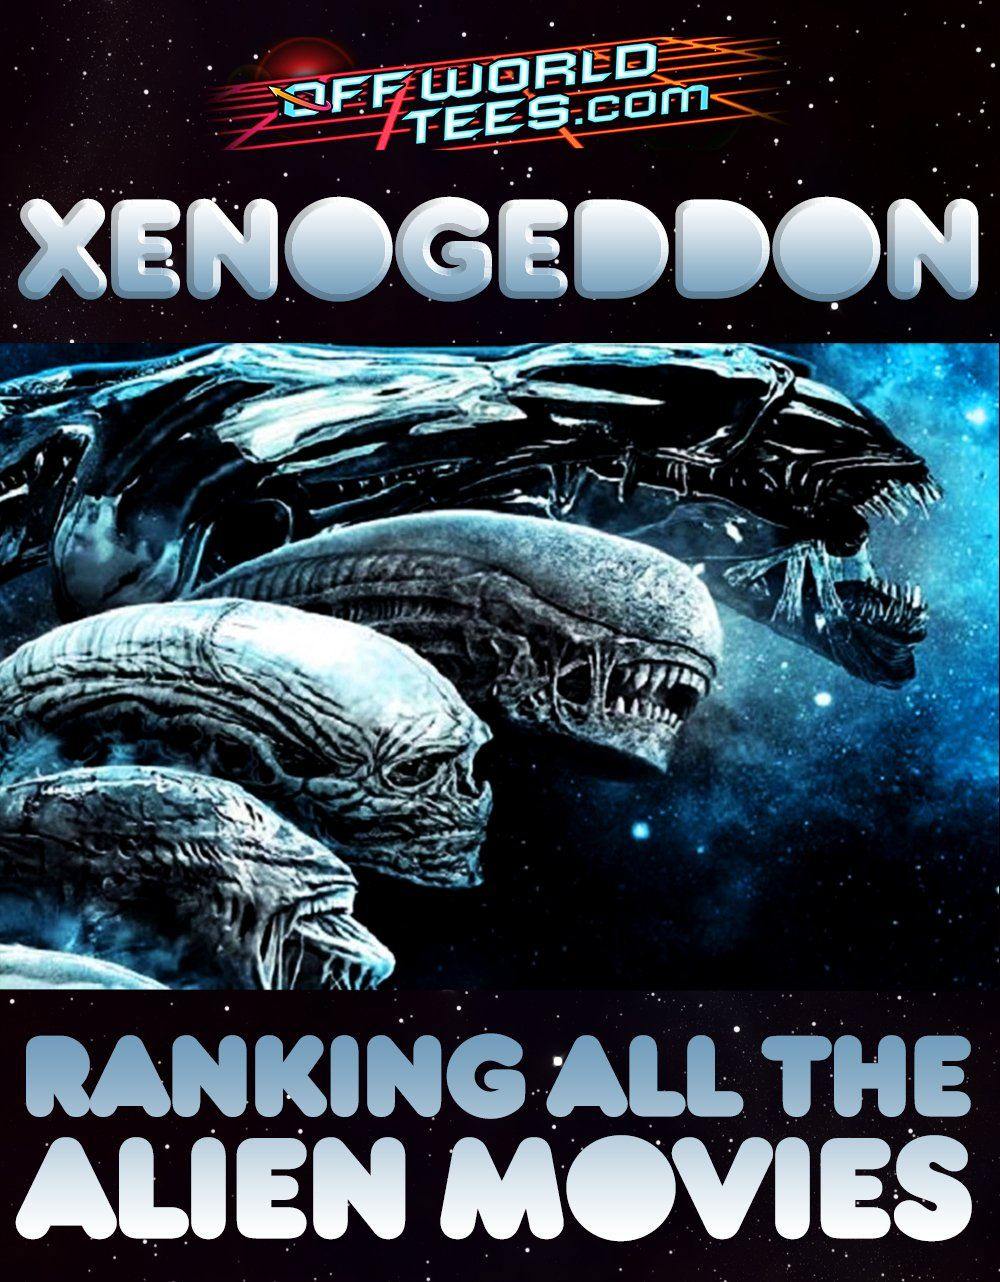 Xenogeddon - Which is the best Alien movie?